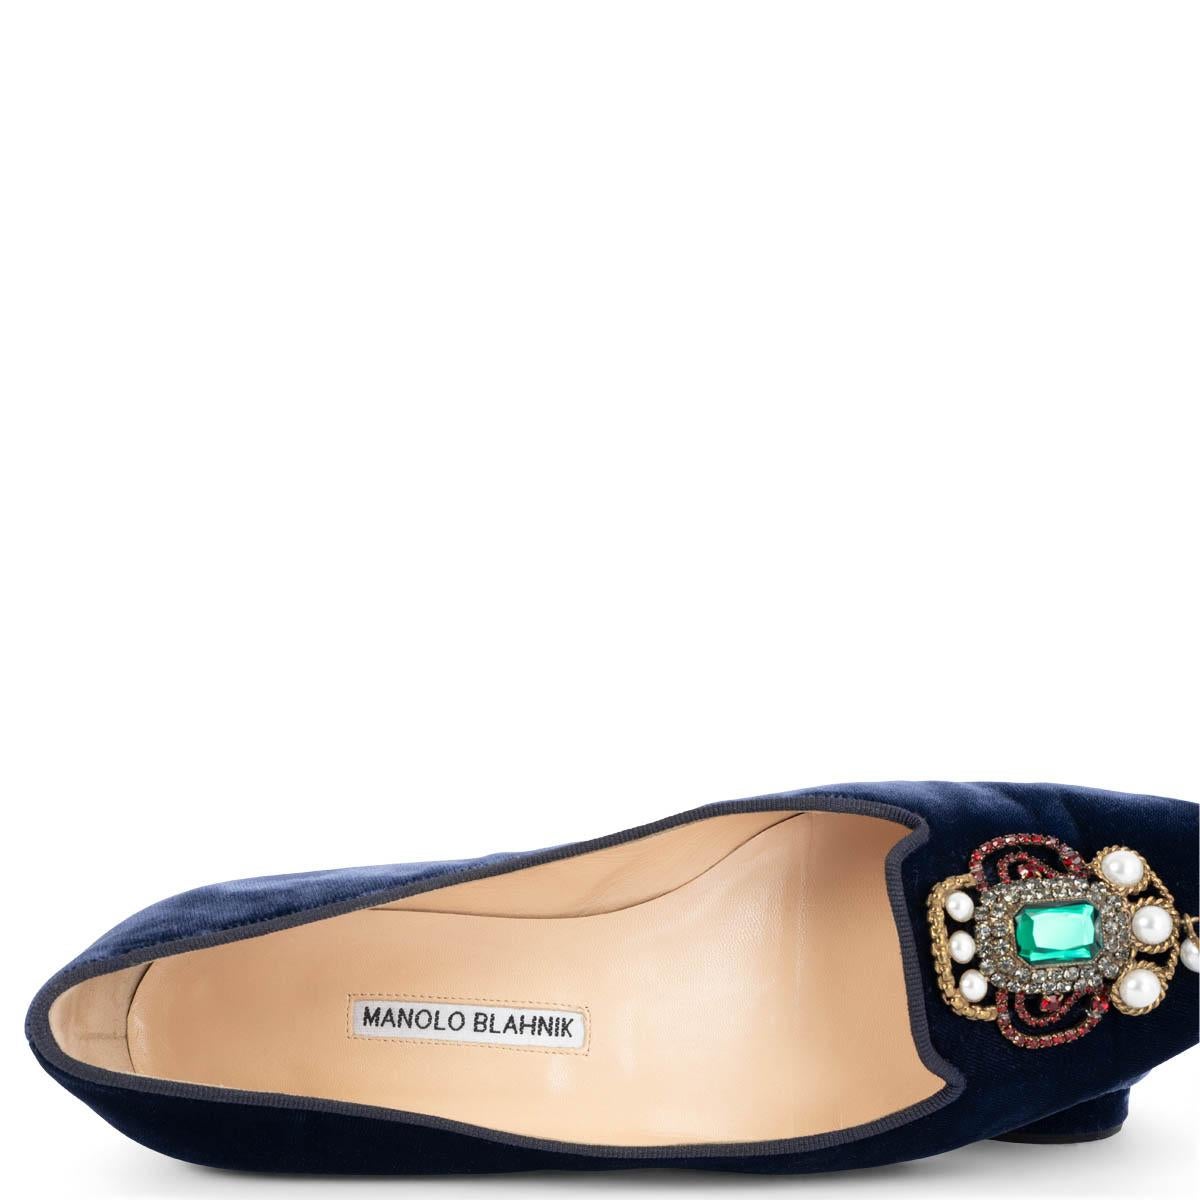 MANOLO BLAHNIK navy blue velvet EUFRASIA LTD ED Ballet Flats Shoes 39 2